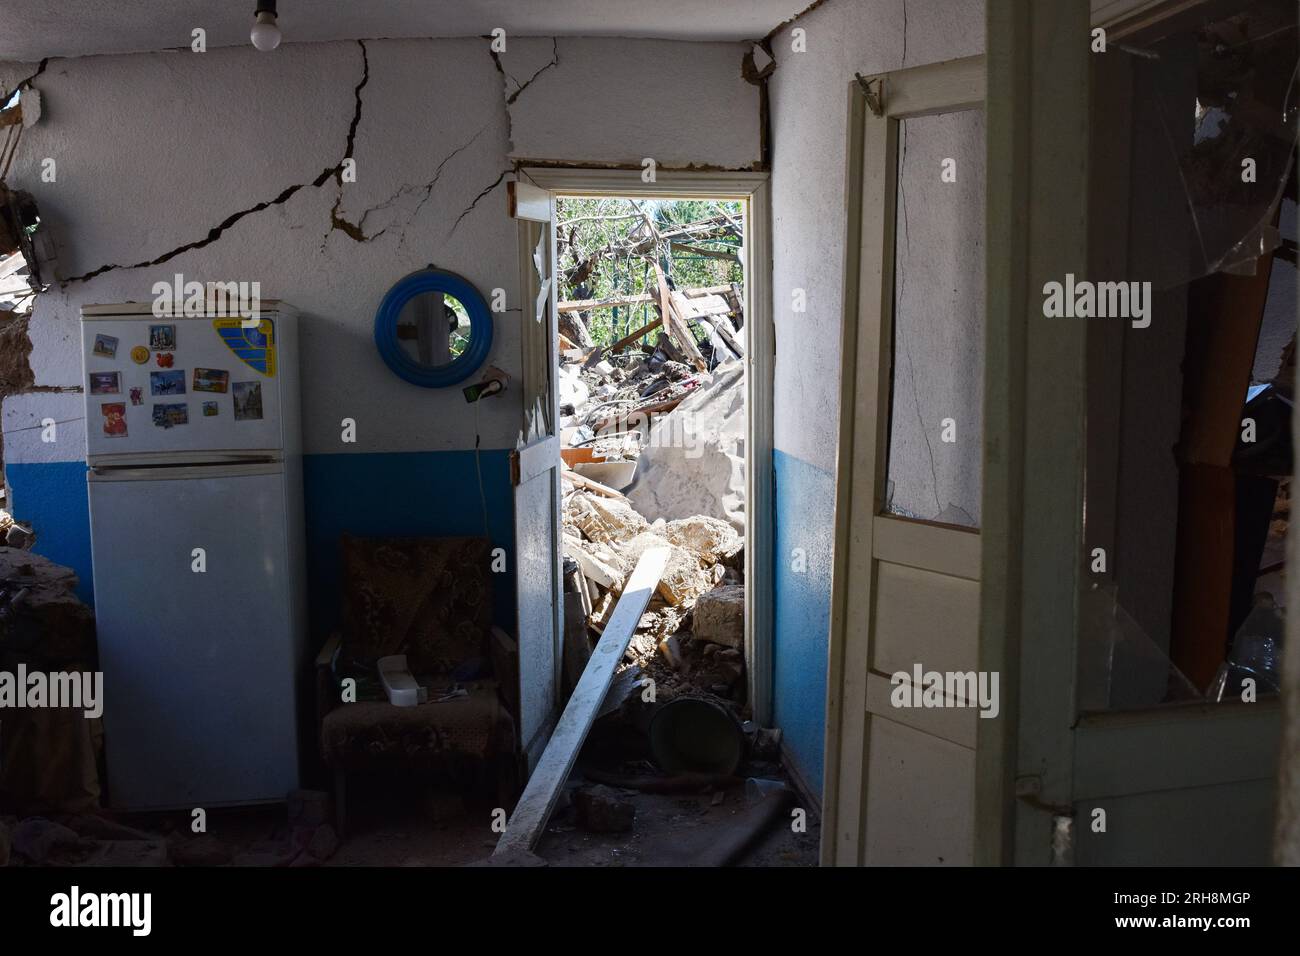 Ein Kühlschrank ist im Haus zu sehen, das durch russische Bomben in Stepne, nahe Zaporizhia, zerstört wurde. Russische Streitkräfte haben drei Raketenangriffe auf Stepne nahe Zaporischschi durchgeführt. Als Folge des Raketenangriffs auf Stepne starben ein 77-jähriger Mann und eine 70-jährige Frau. Eine 64-jährige Frau wurde in eine medizinische Einrichtung gebracht und erhält die notwendige Hilfe. Das Innenministerium berichtete, dass der russische Raketenangriff gegen 2:00 UHR (August 14) stattfand. (Foto: Andriy Andriyenko/SOPA Images/Sipa USA) Stockfoto